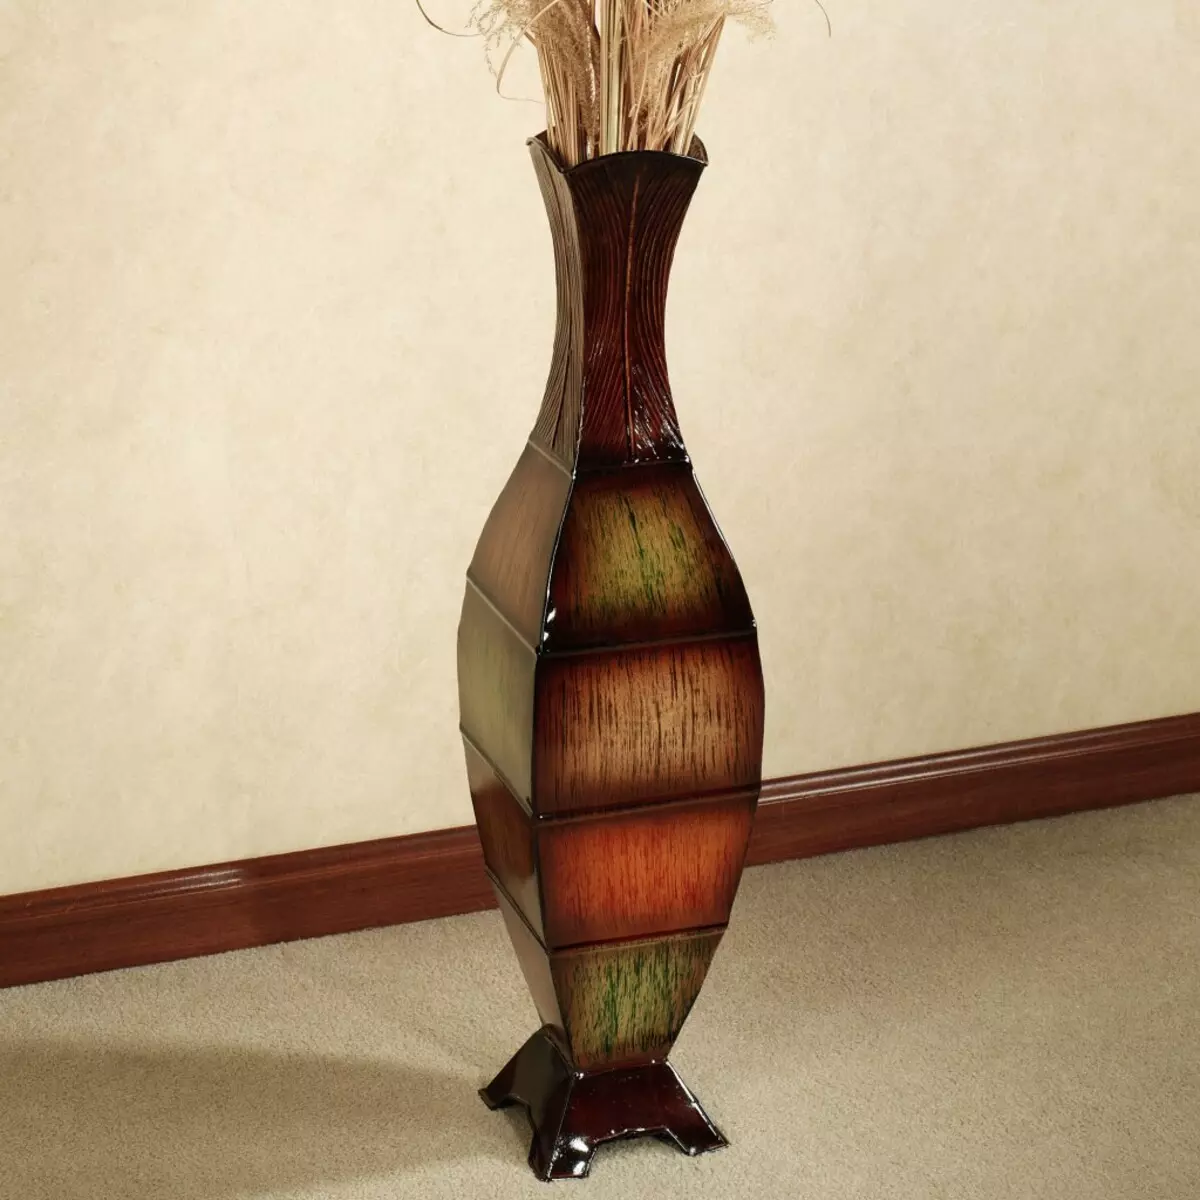 Vas outdoor dekoratif tangan tinggi